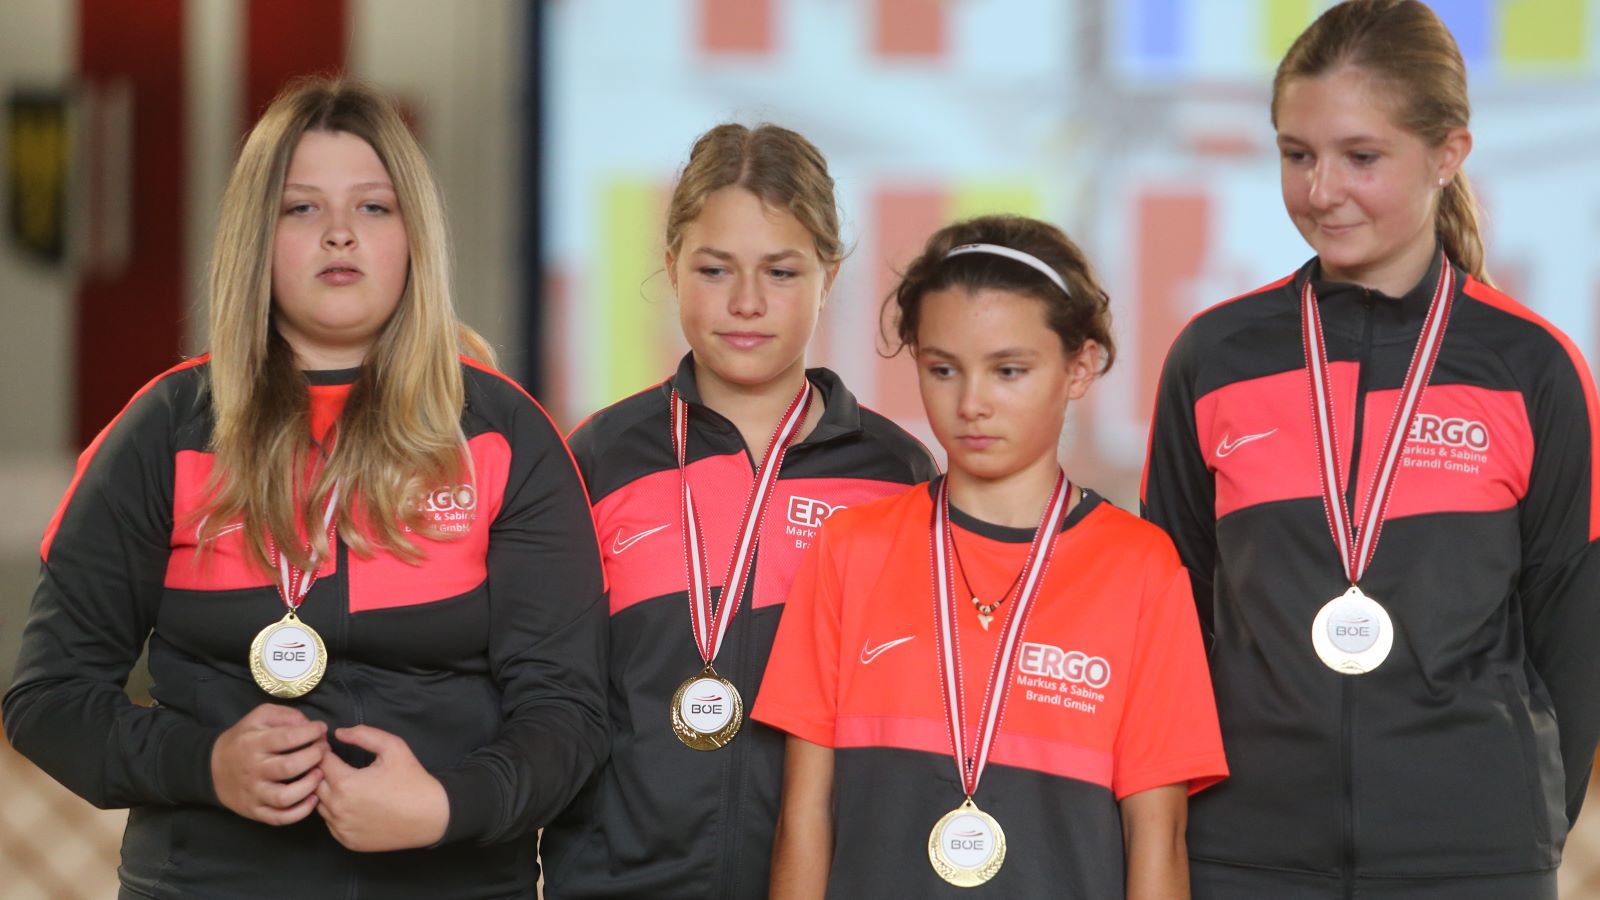 2. Tag der Austrian Girlies Trophy in Bad Fischau-Brunn